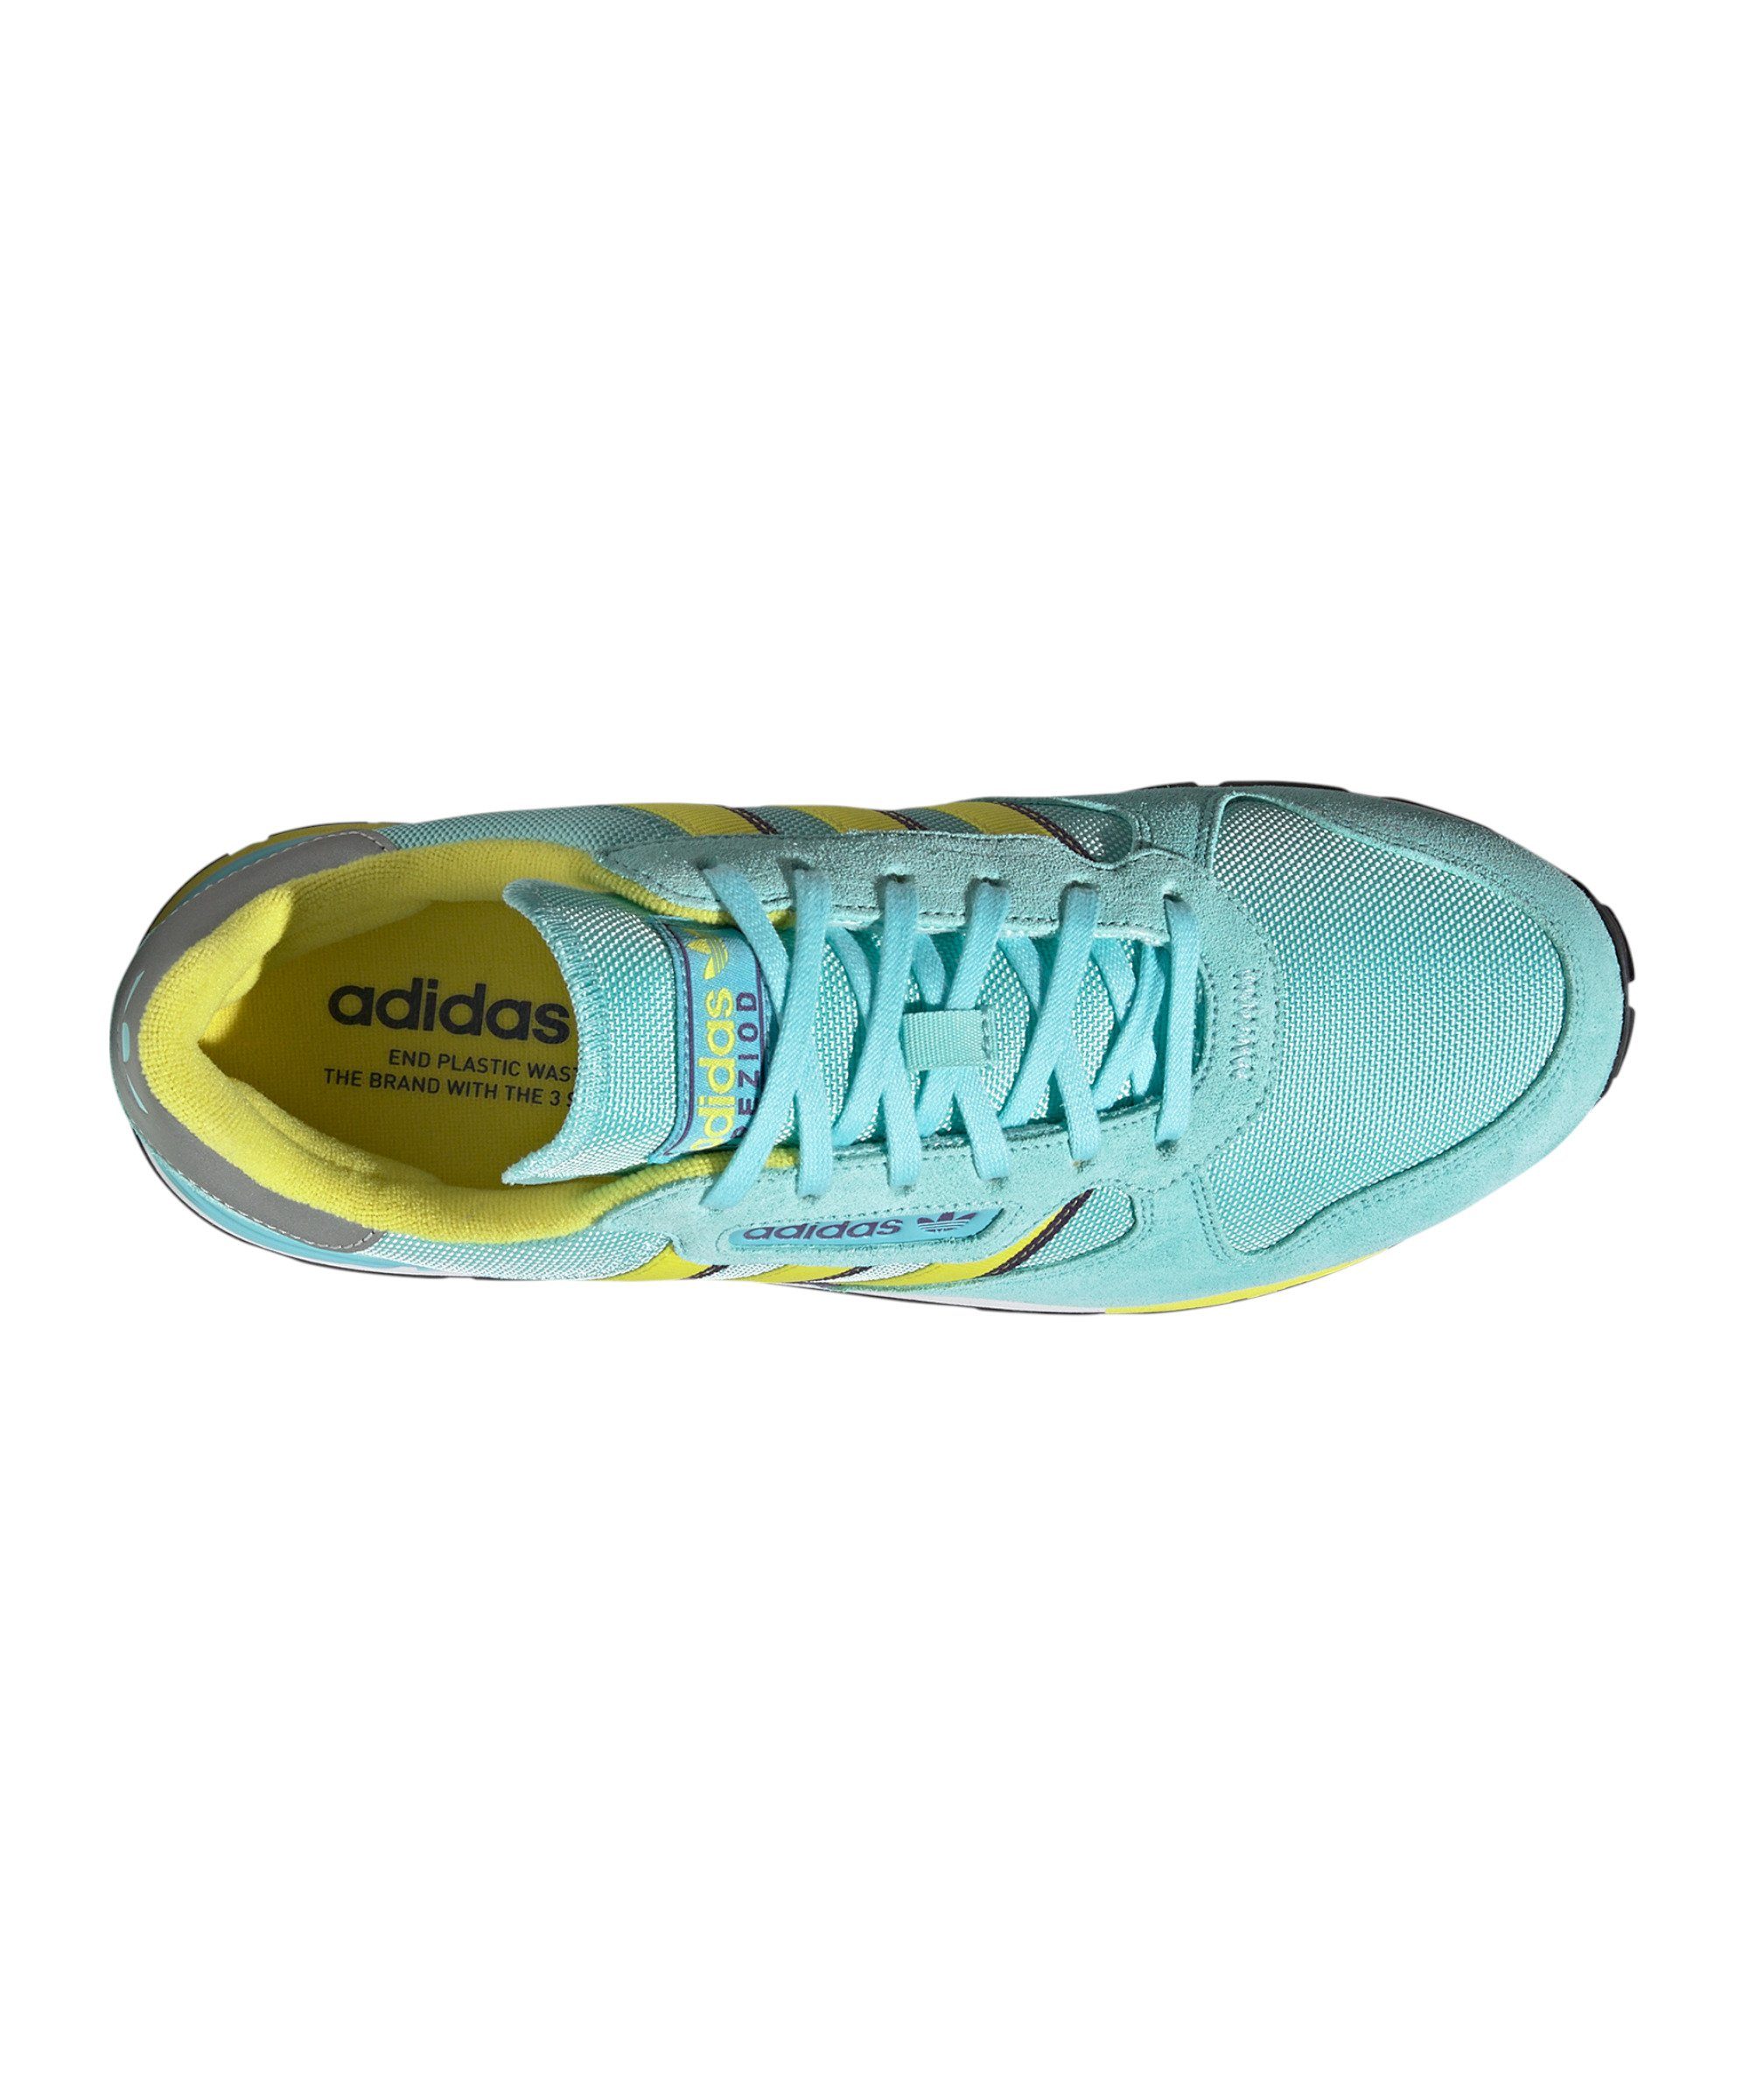 blaugelblila Originals Sneaker 2 adidas Treziod